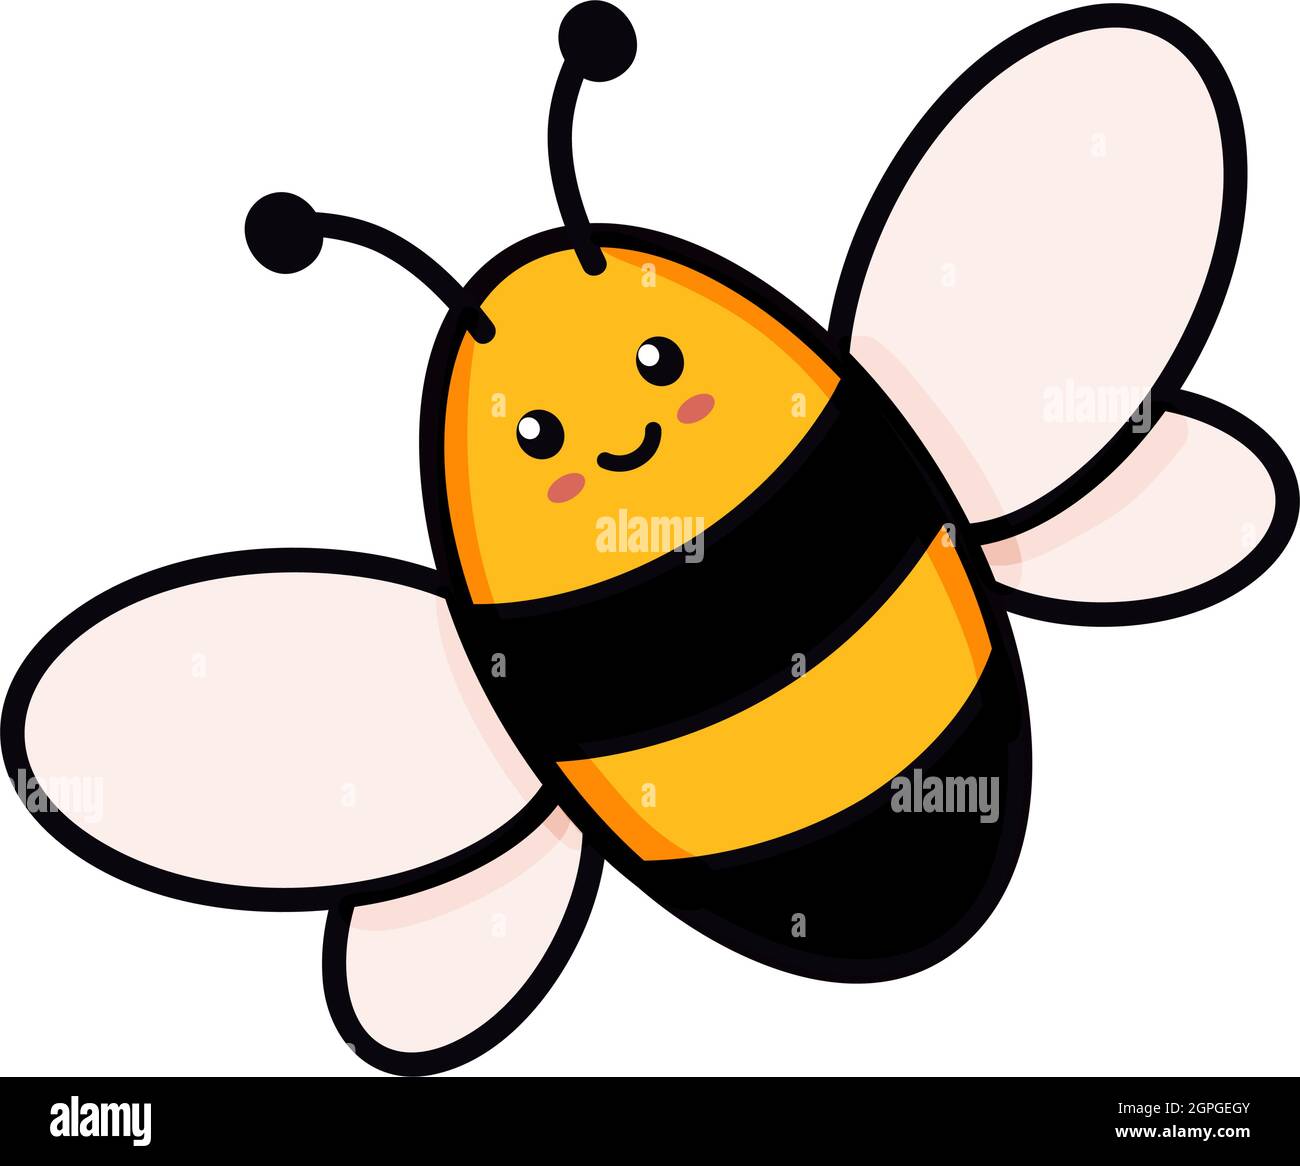 Illustration de vecteur abeille mignon en forme de doodle. Dessin coloré pour enfants pour le design d'icône et de logo dans les couleurs jaune et noir isolé sur fond blanc Illustration de Vecteur